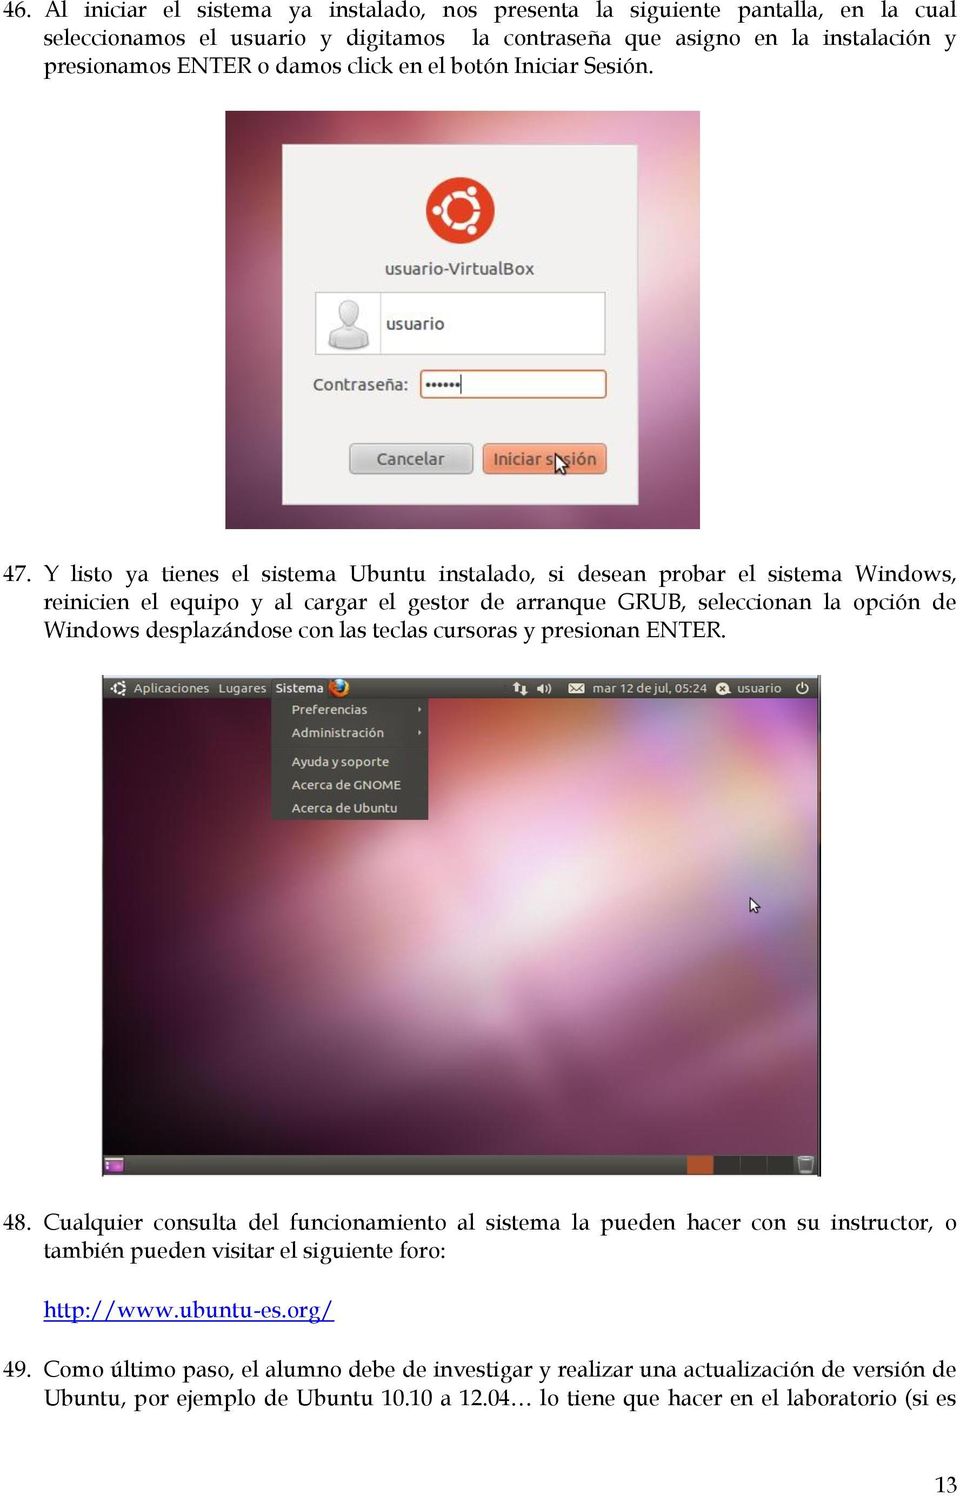 Y listo ya tienes el sistema Ubuntu instalado, si desean probar el sistema Windows, reinicien el equipo y al cargar el gestor de arranque GRUB, seleccionan la opción de Windows desplazándose con las